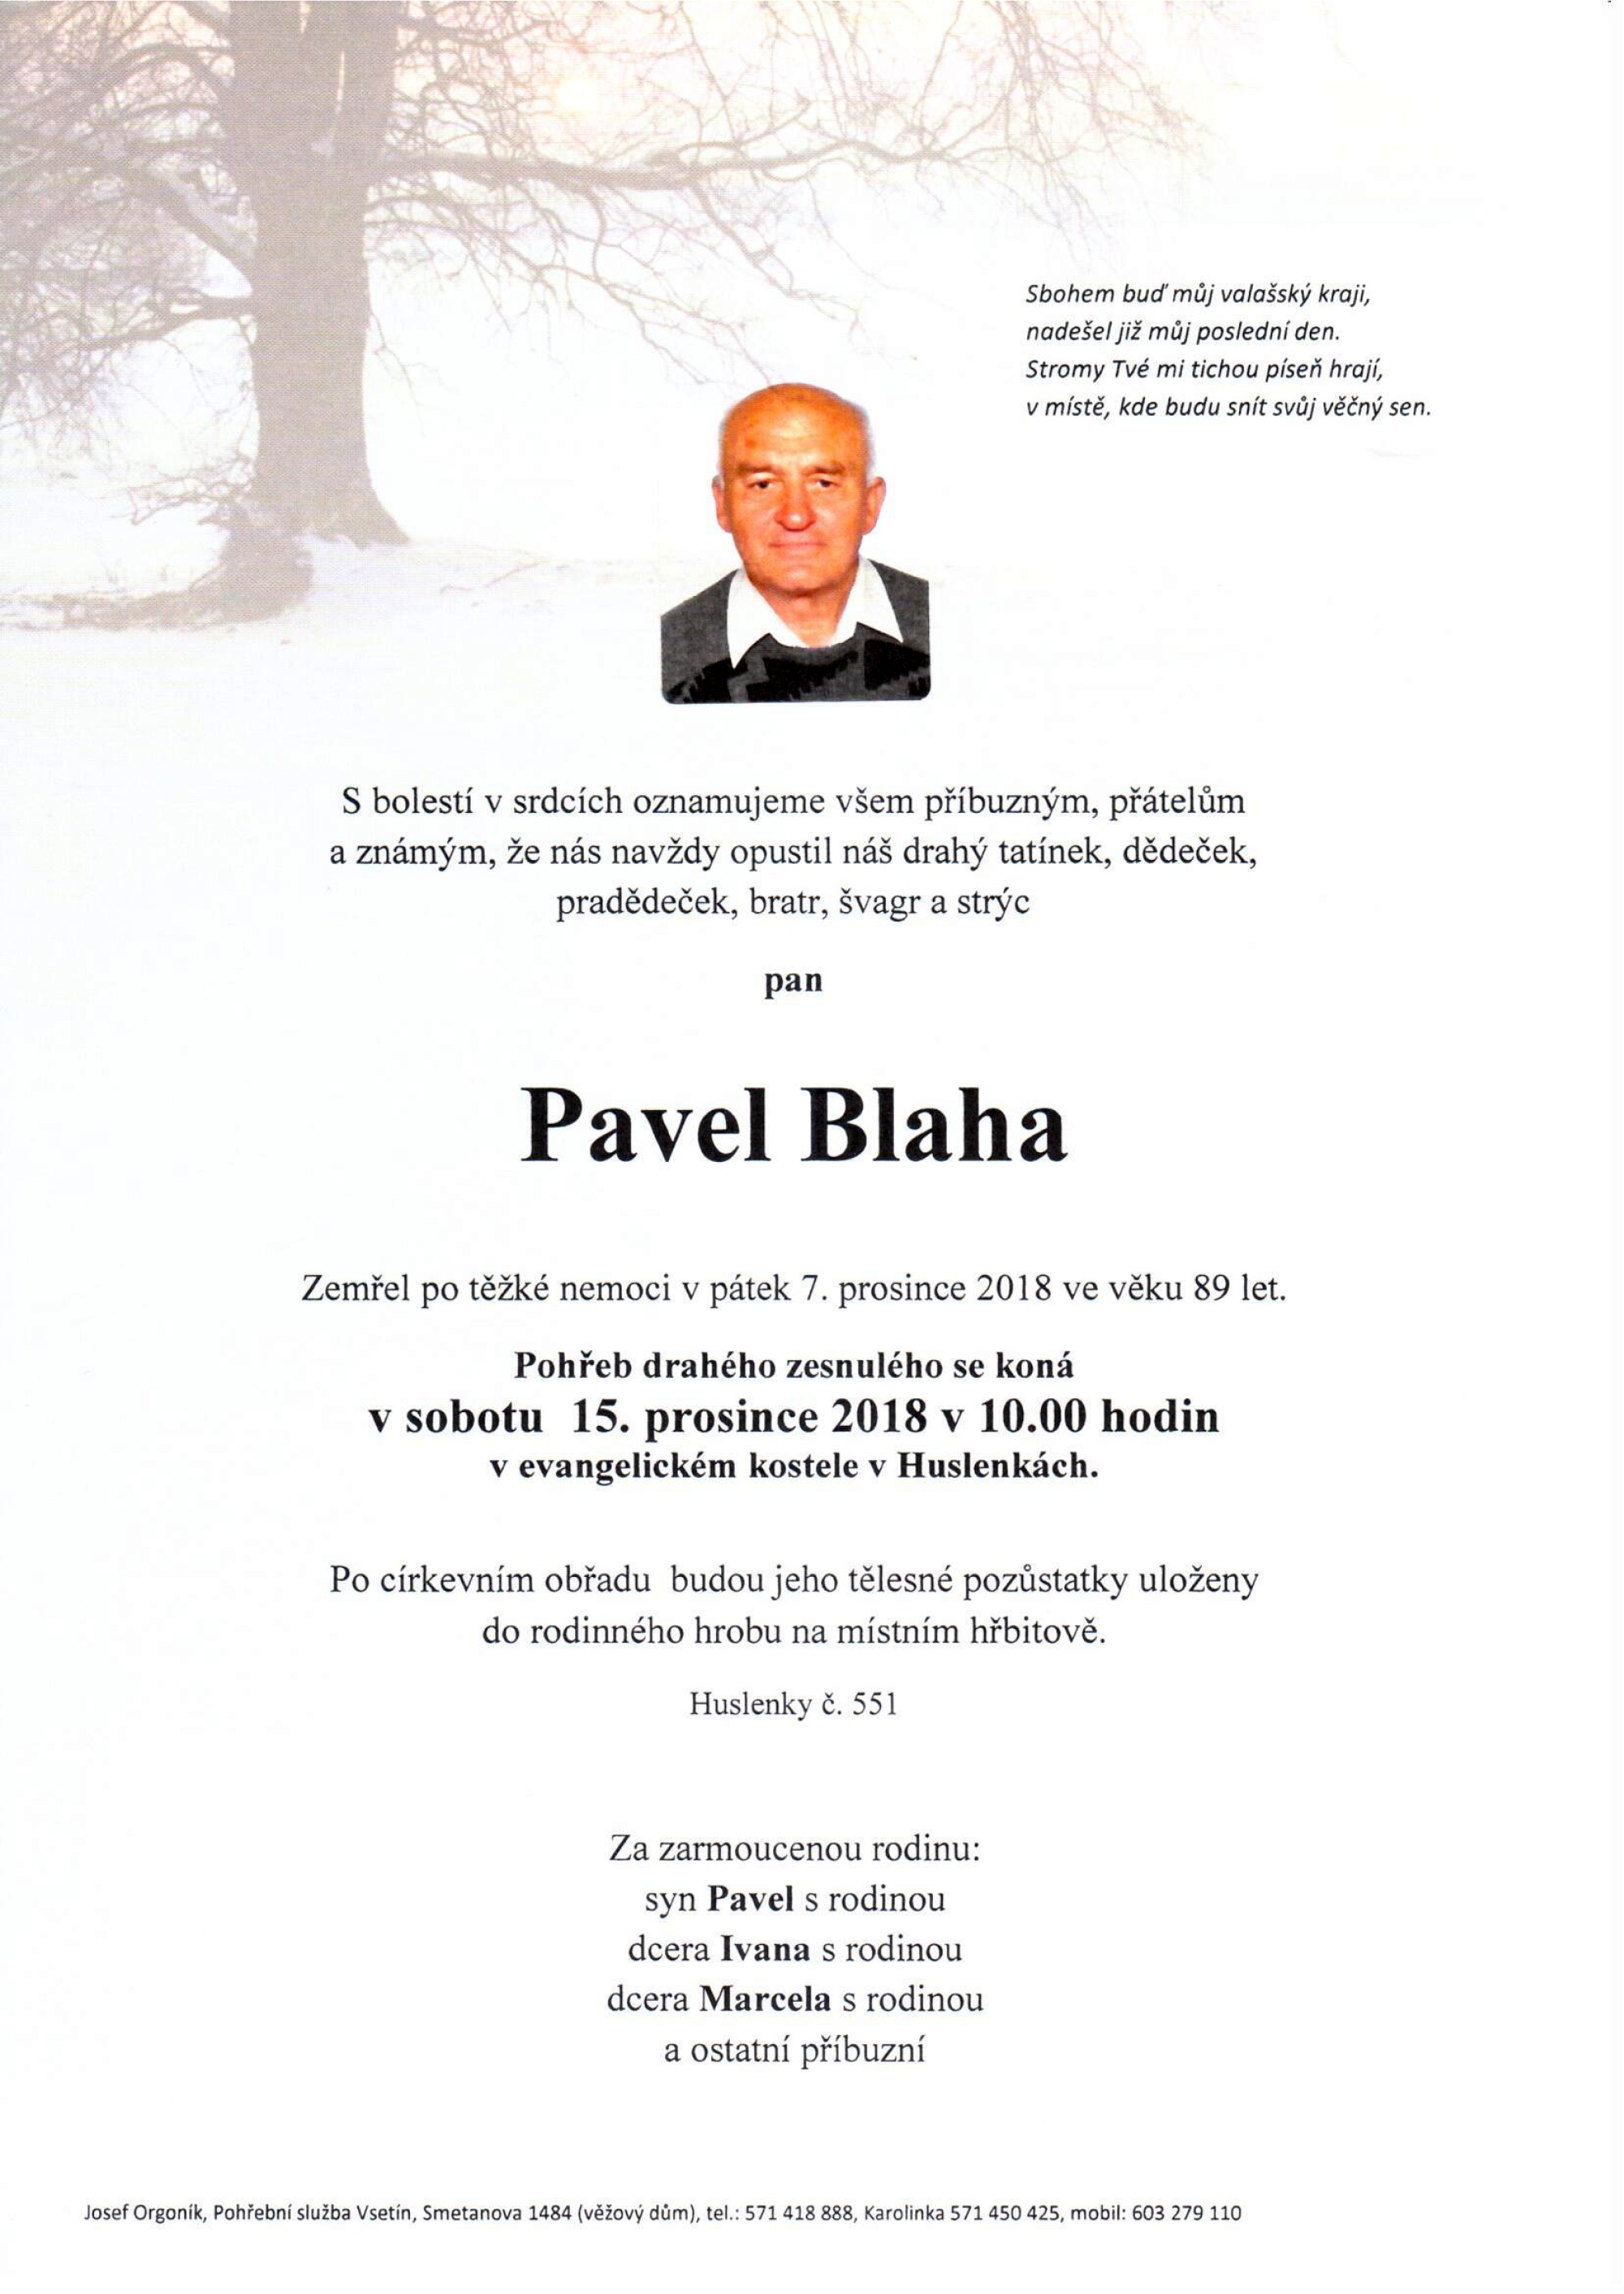 Pavel Blaha